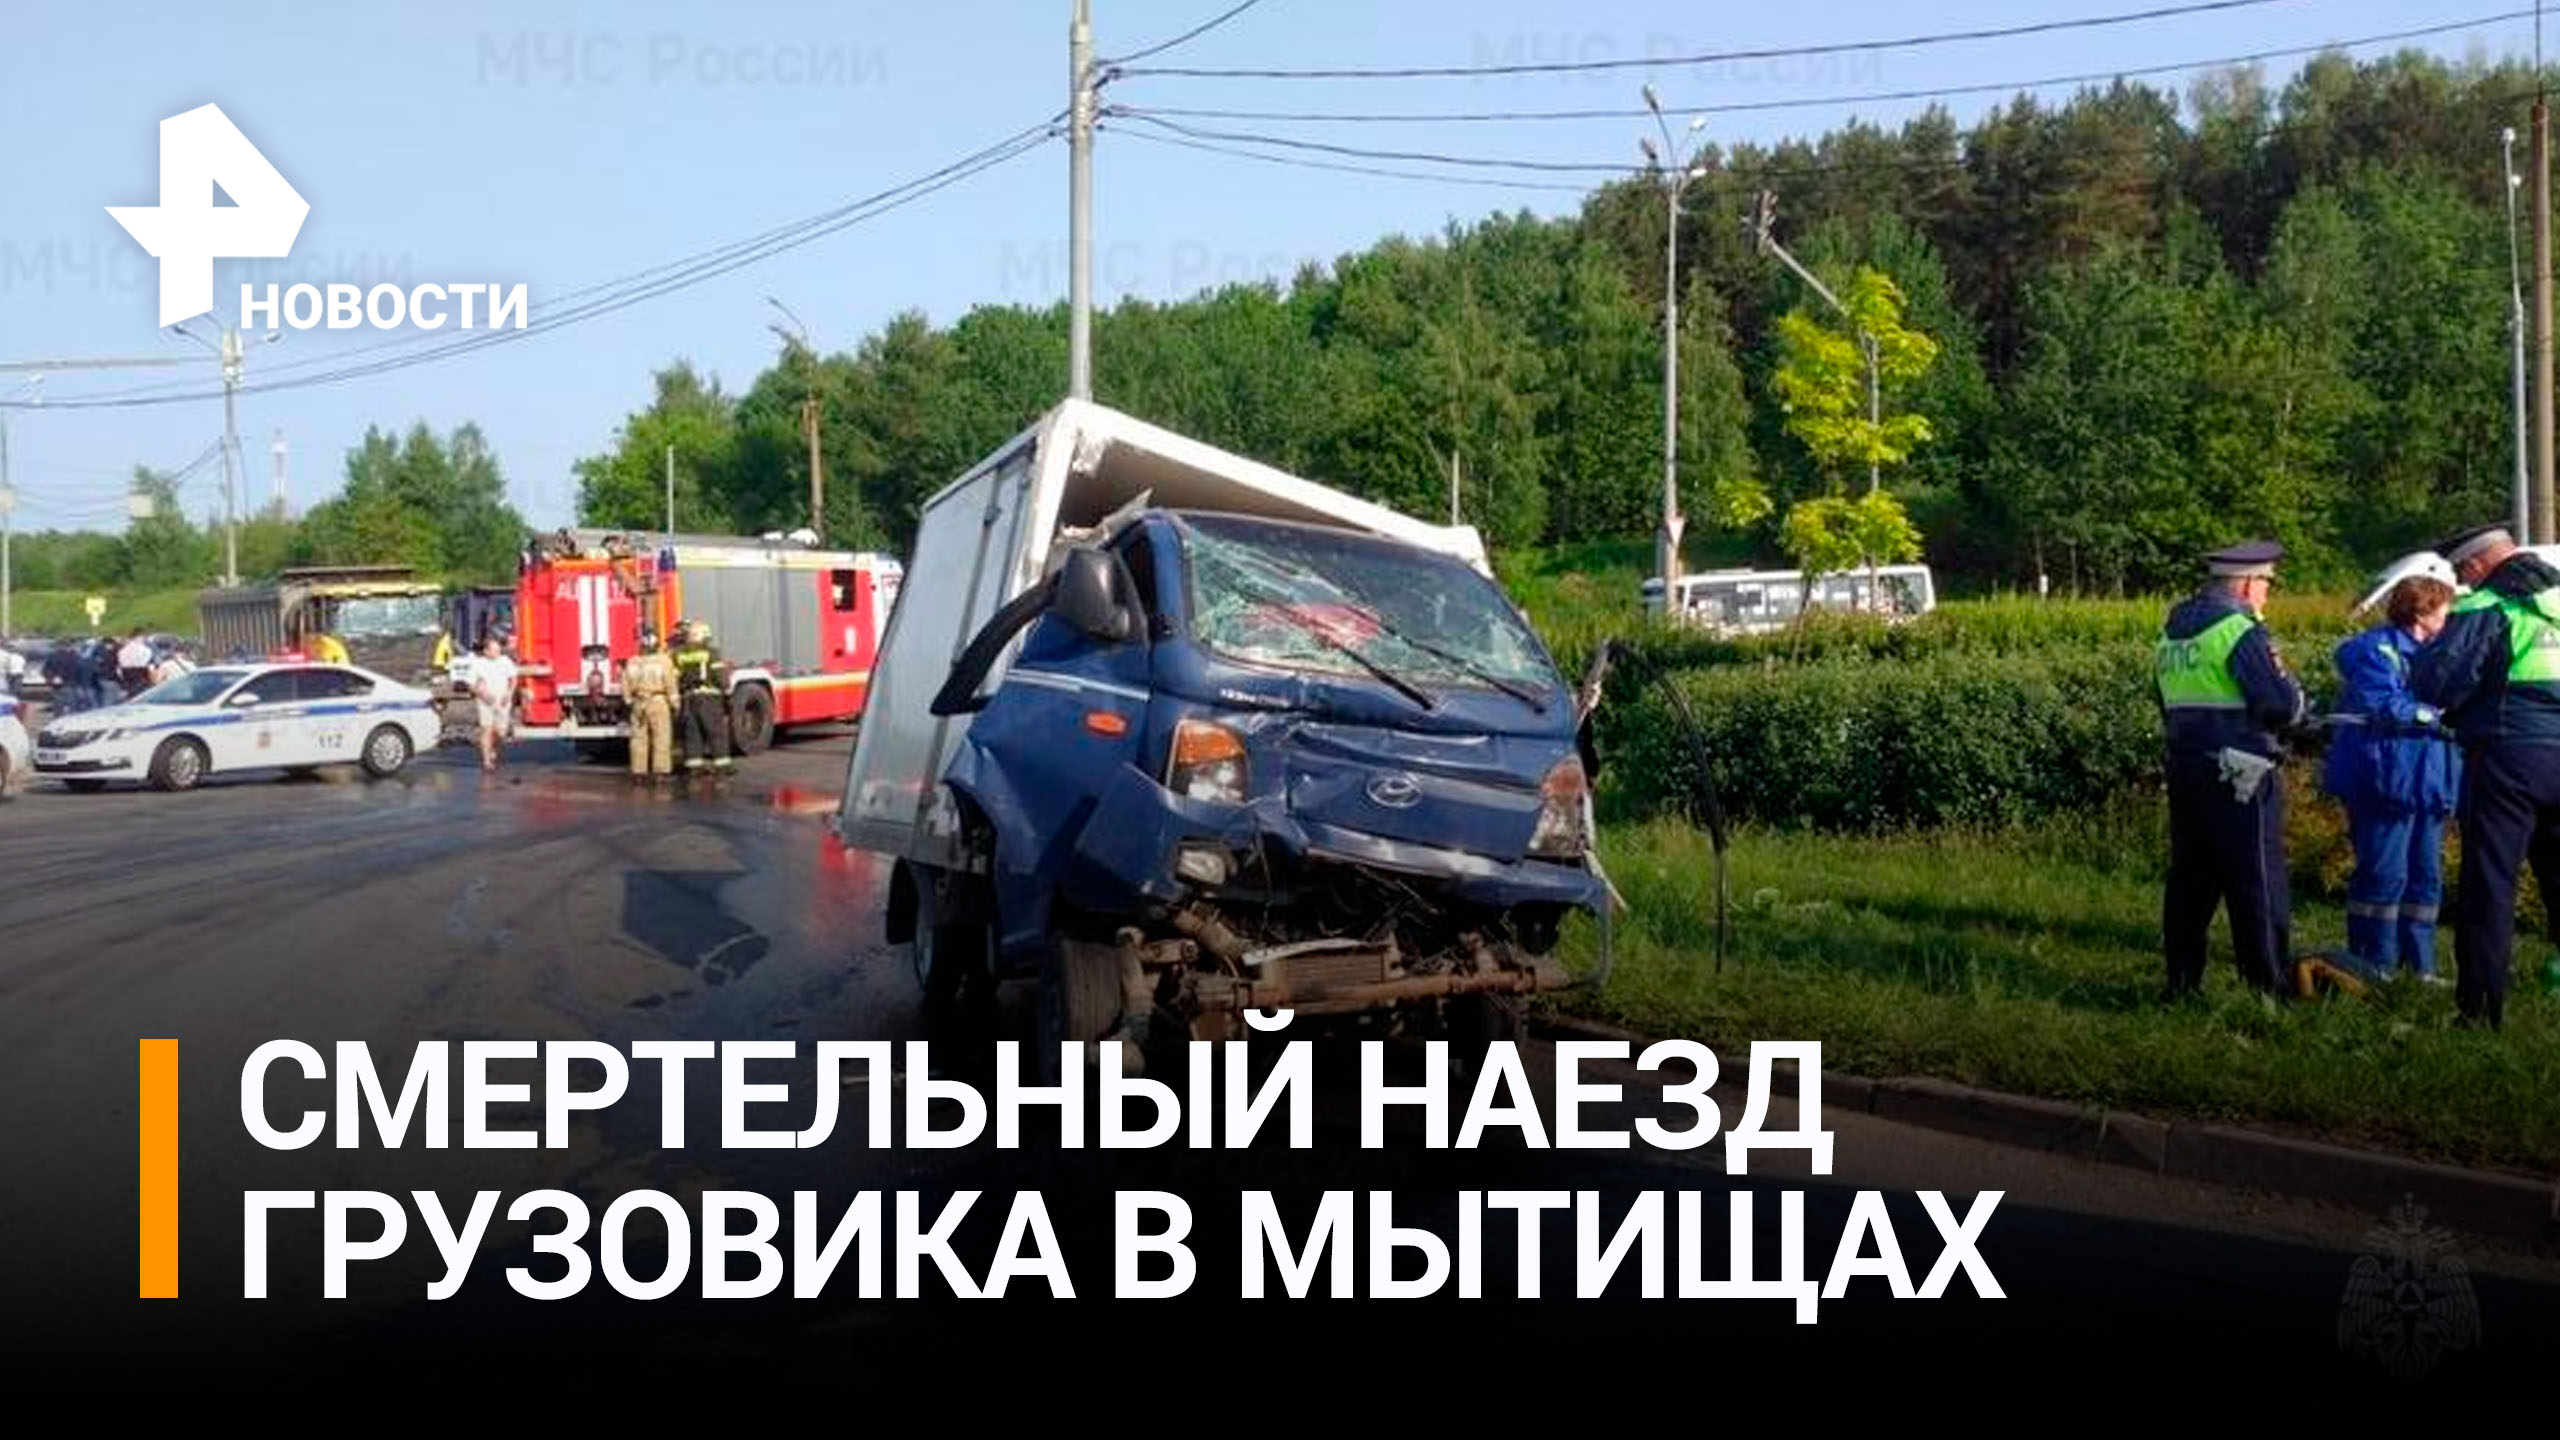 Один человек погиб в массовом ДТП в Мытищах / РЕН Новости